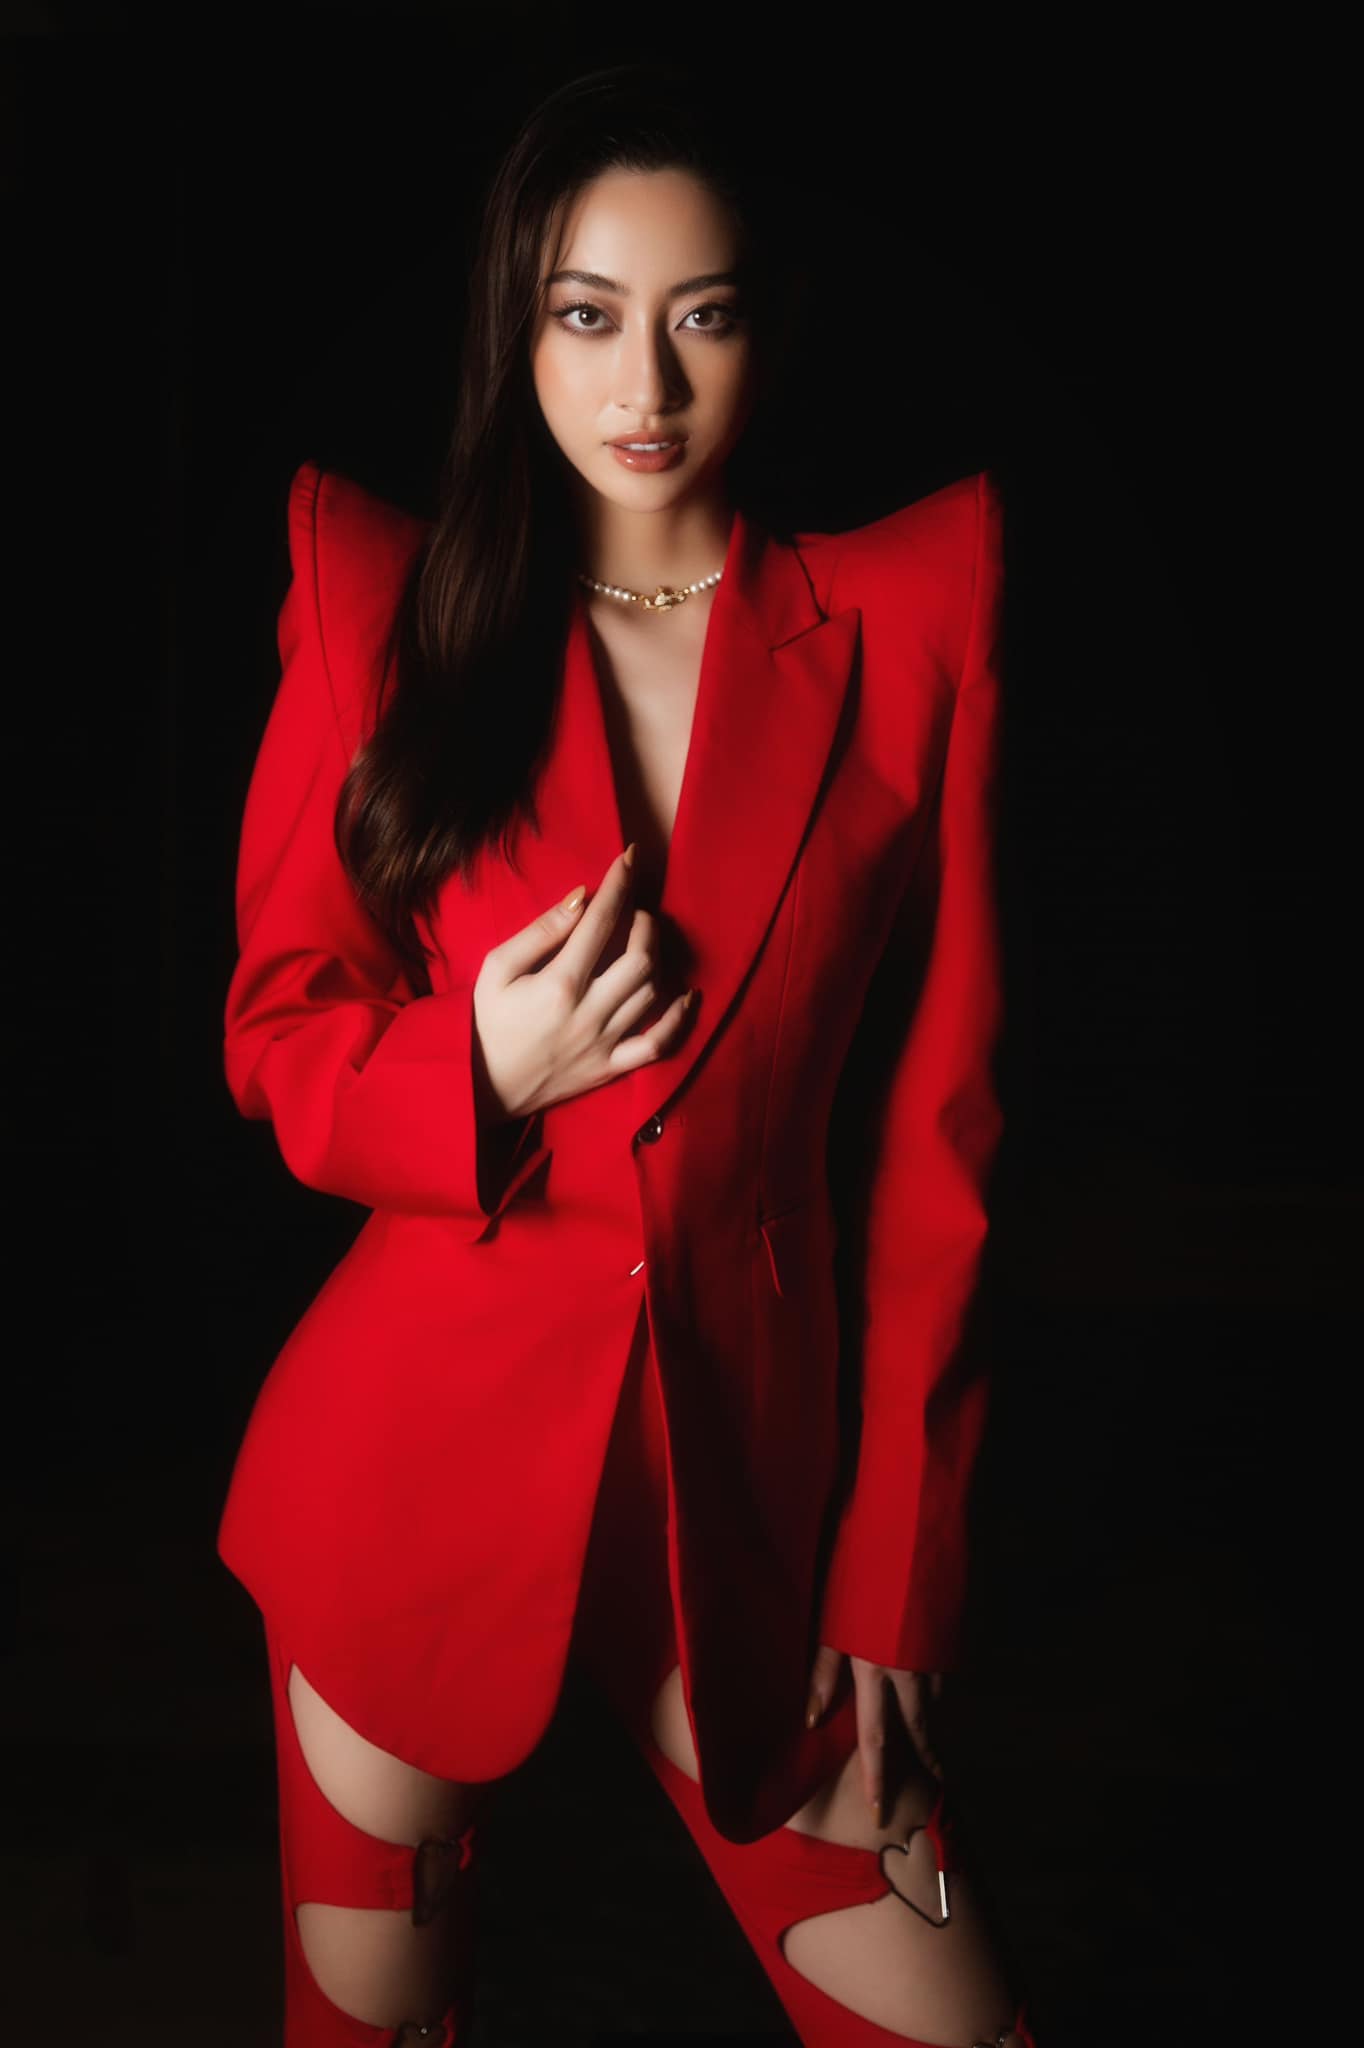 Lương Thùy Linh không cần bàn cãi về độ 'cháy'. Nàng mentor của The Next Face diện set đồ đỏ quyền lực, điểm nhất là chiếc quần cắt xẻ táo bạo cùng áo vest với phần vai nhô cao.